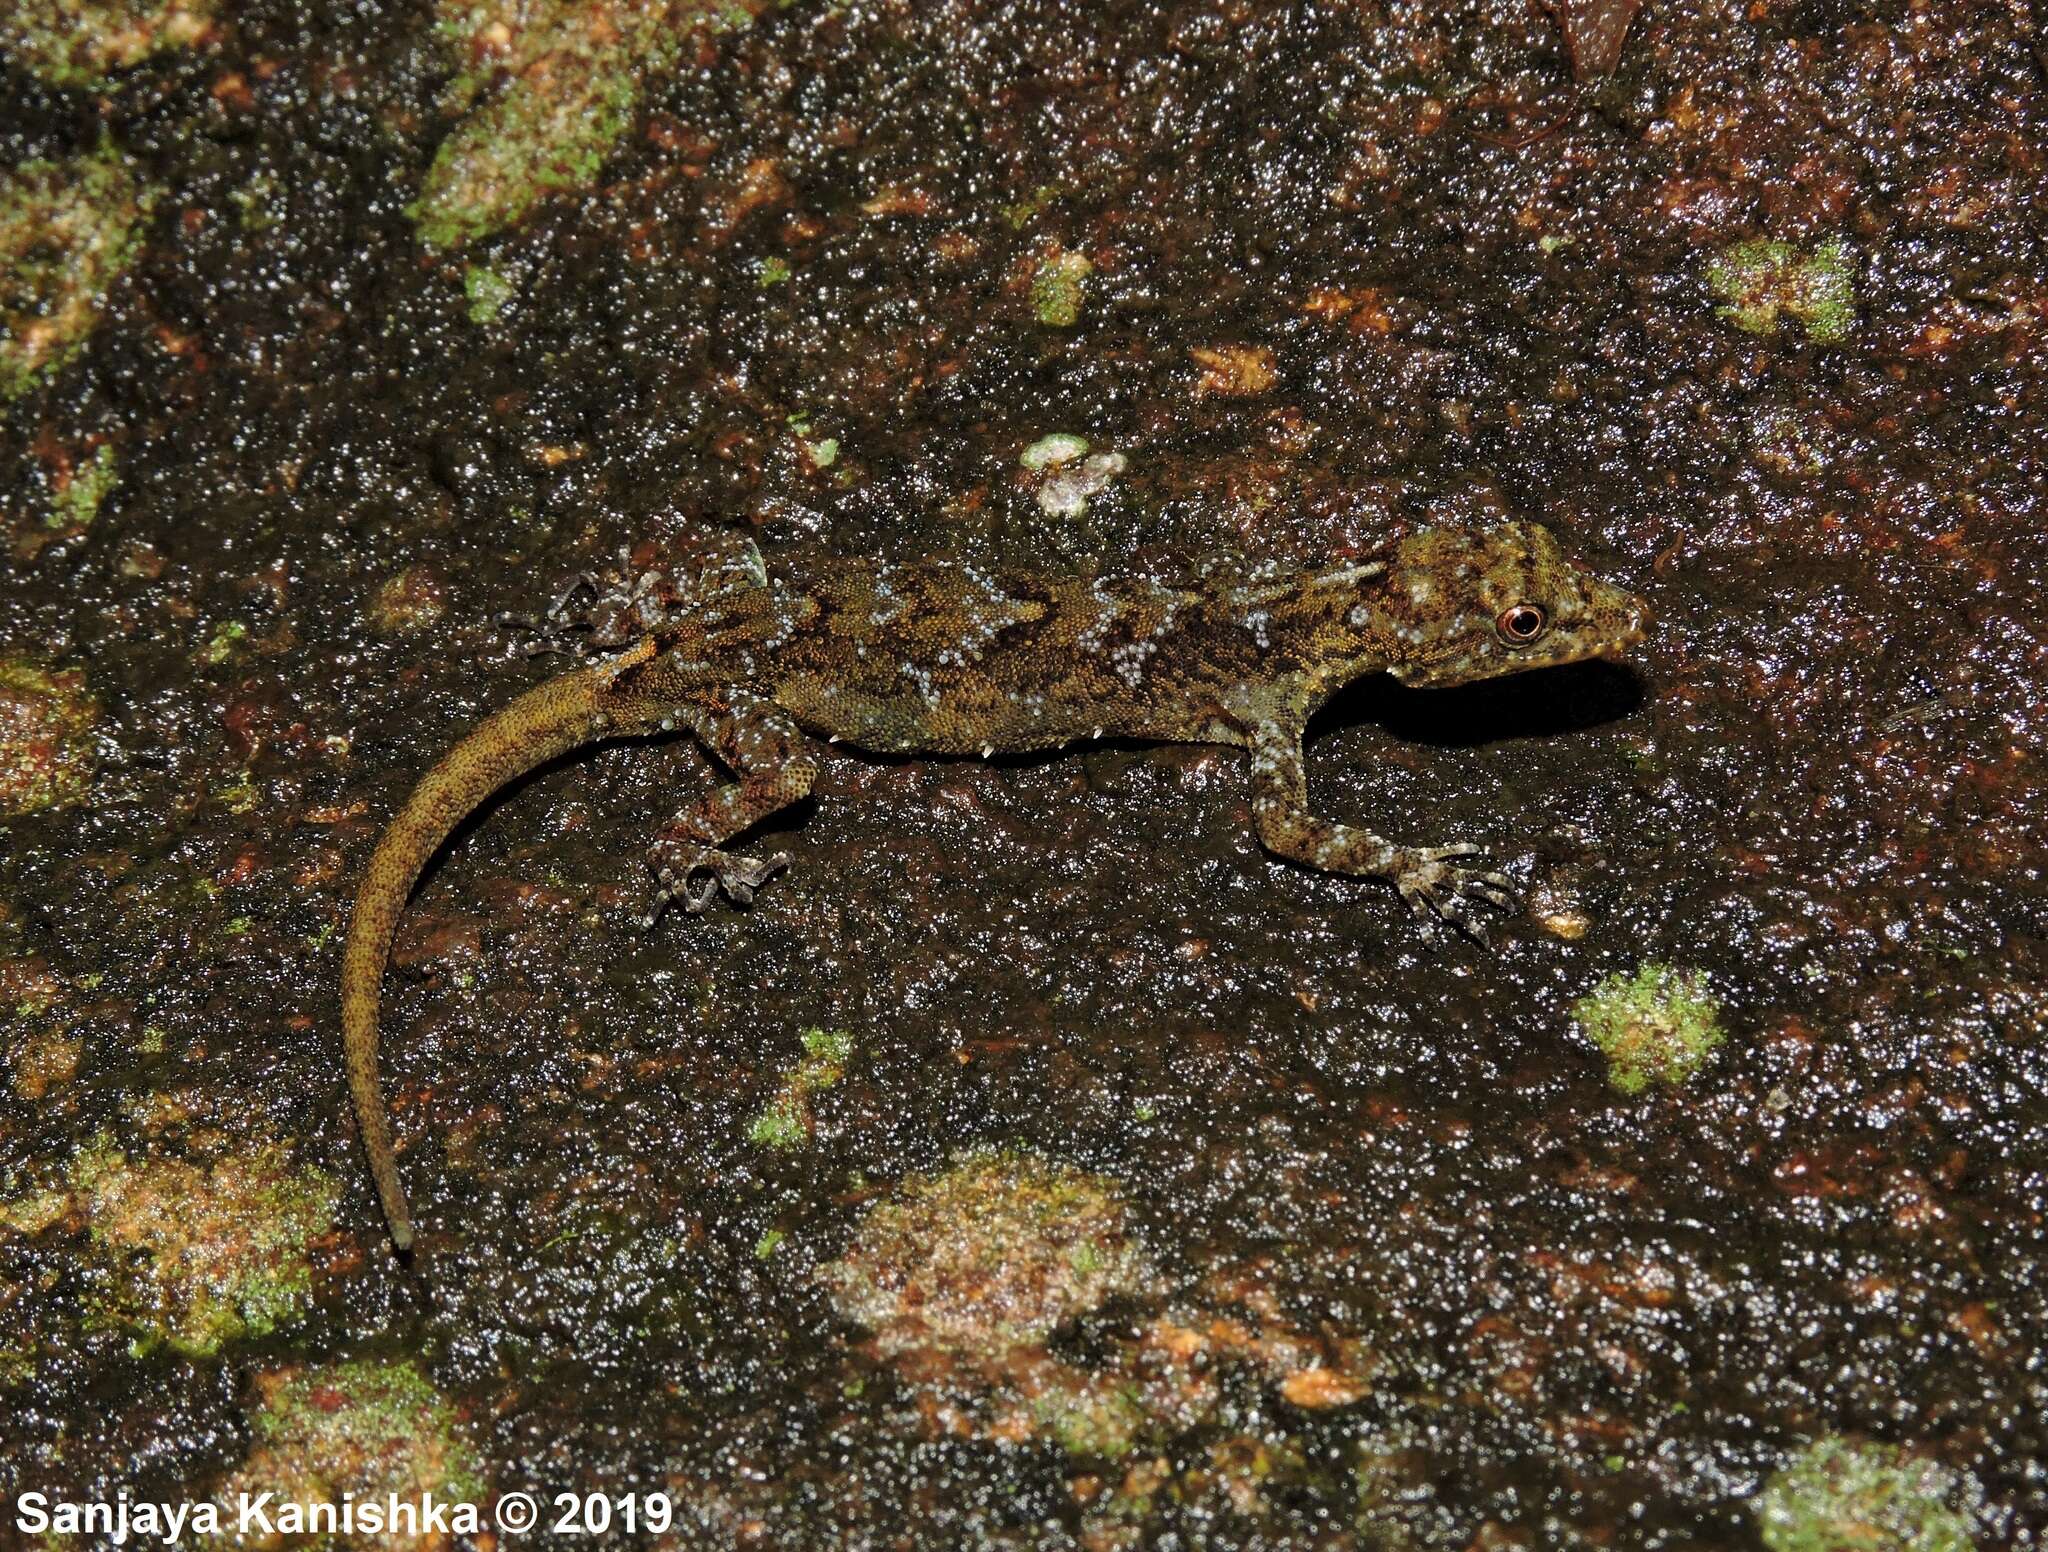 Image of Samanala day gecko